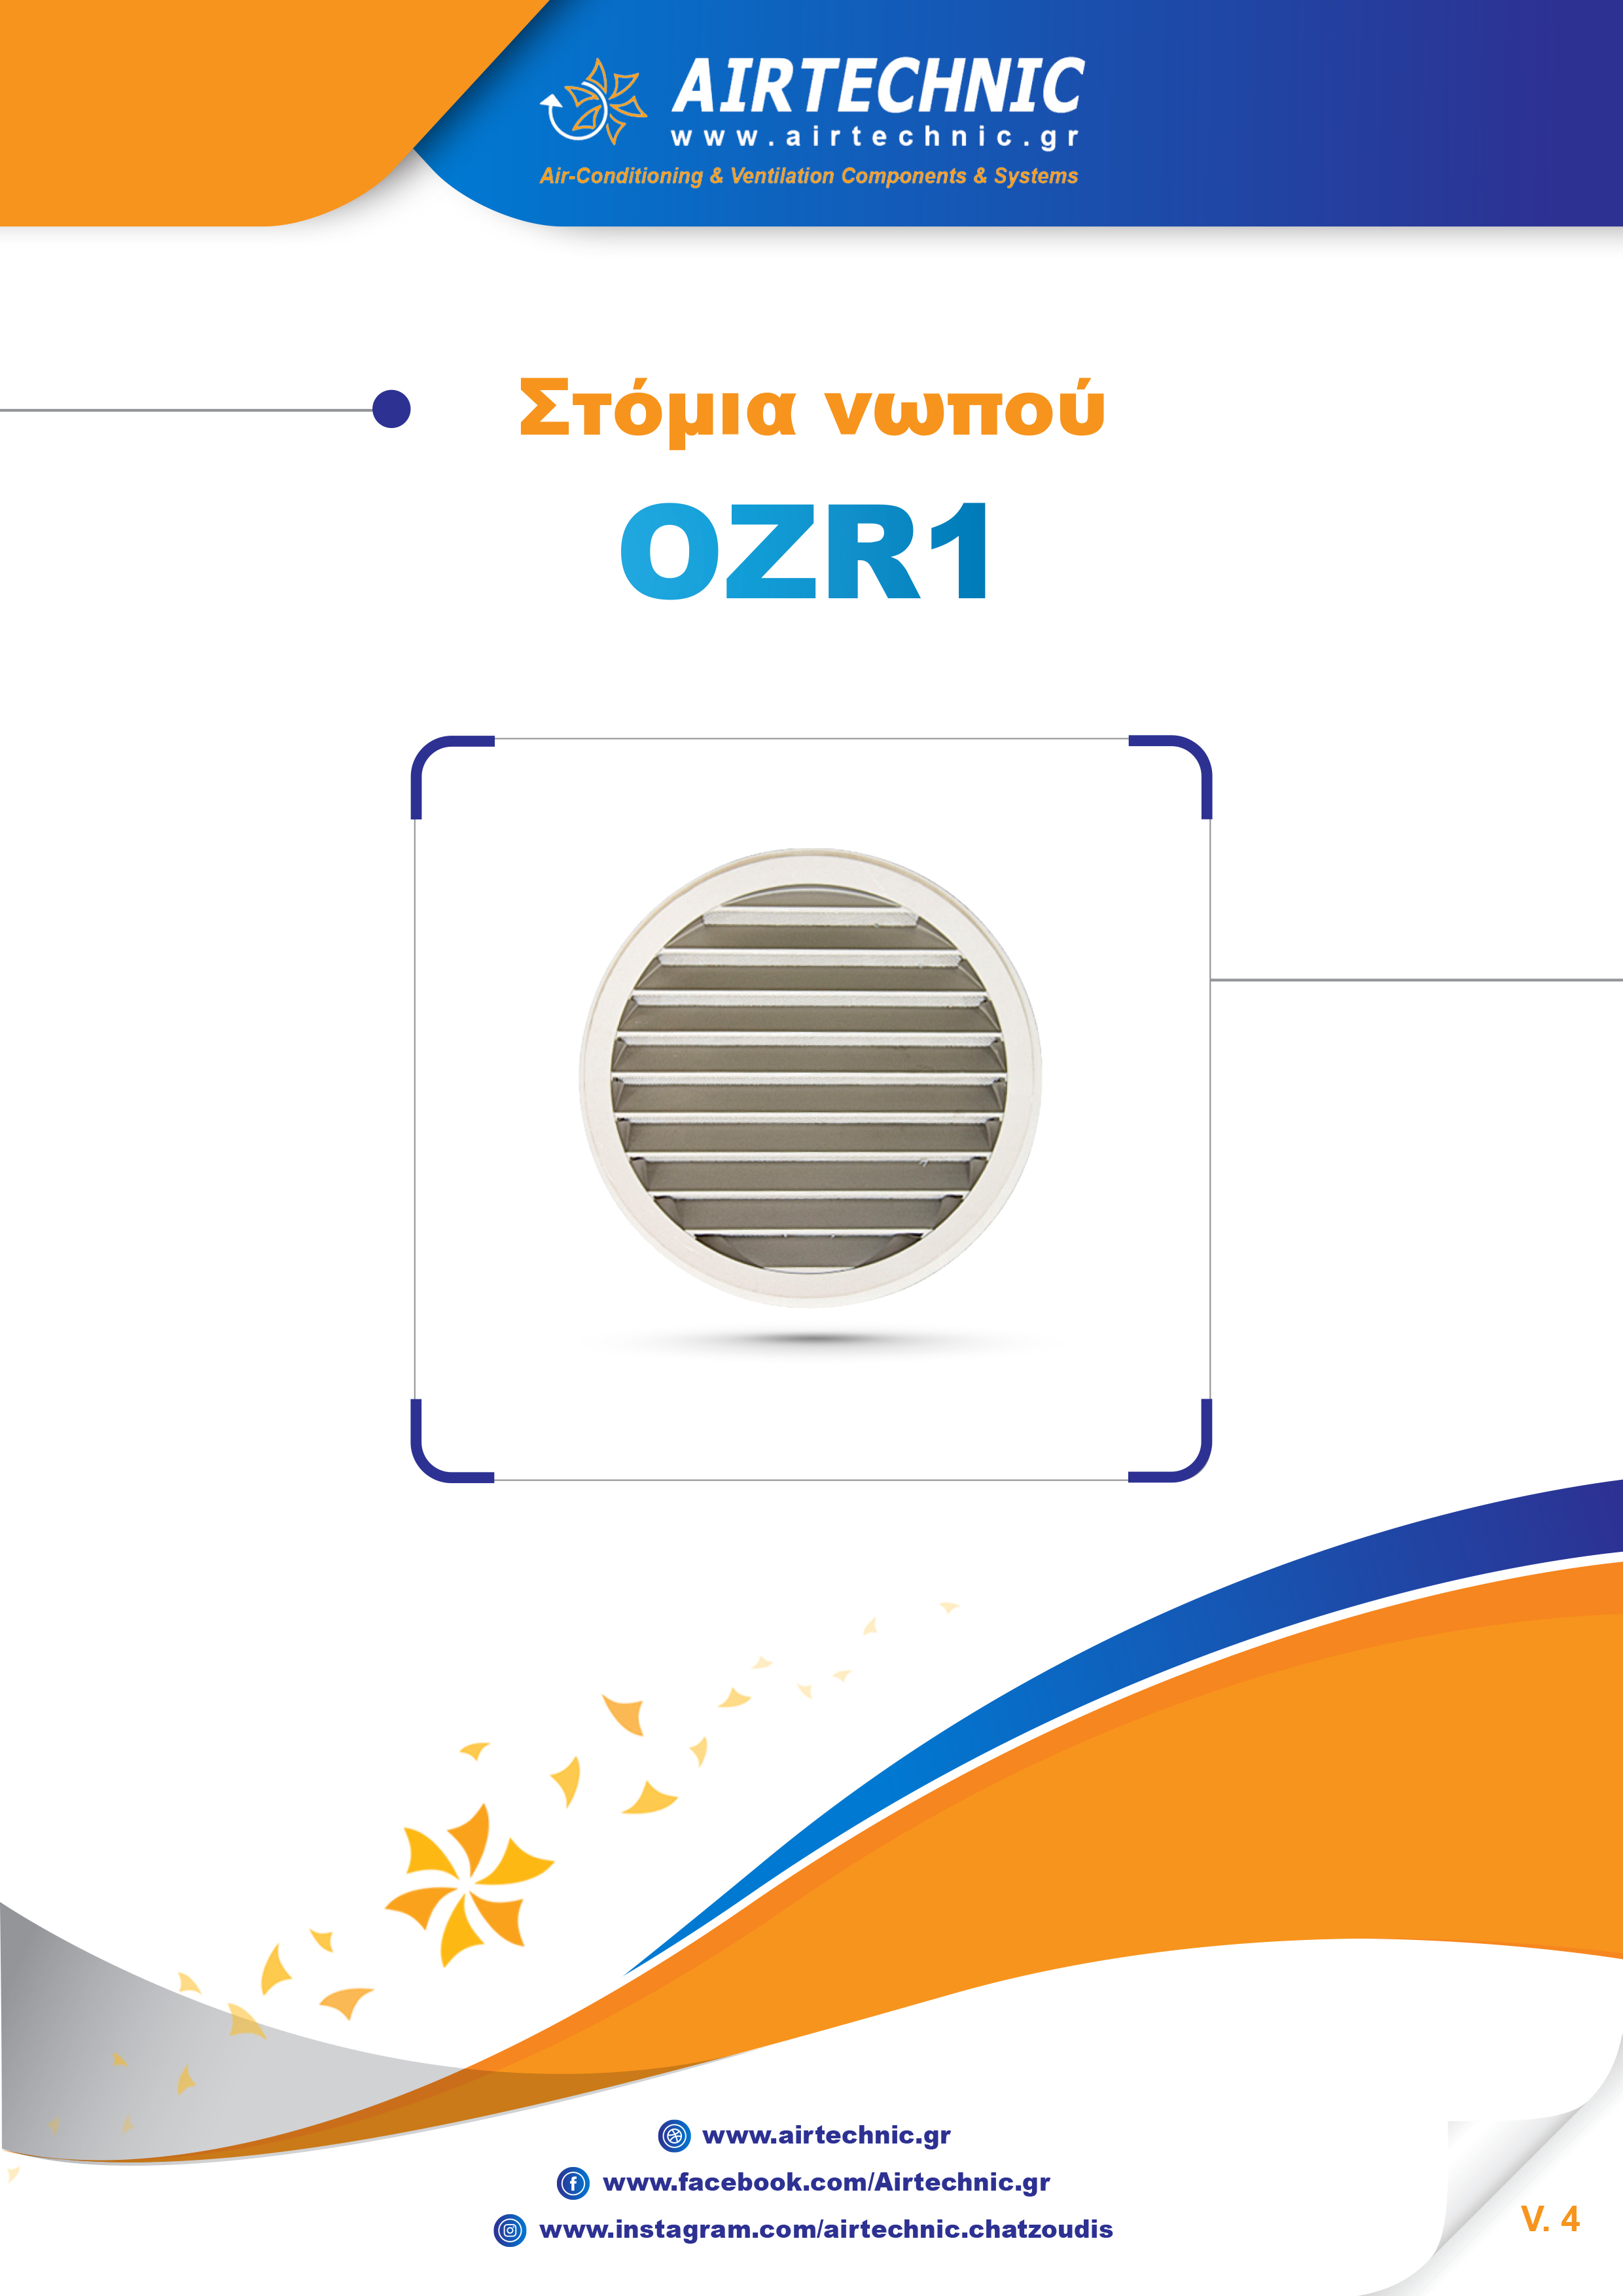 ΕΝΤΥΠΟ "OZR1" [Gr]